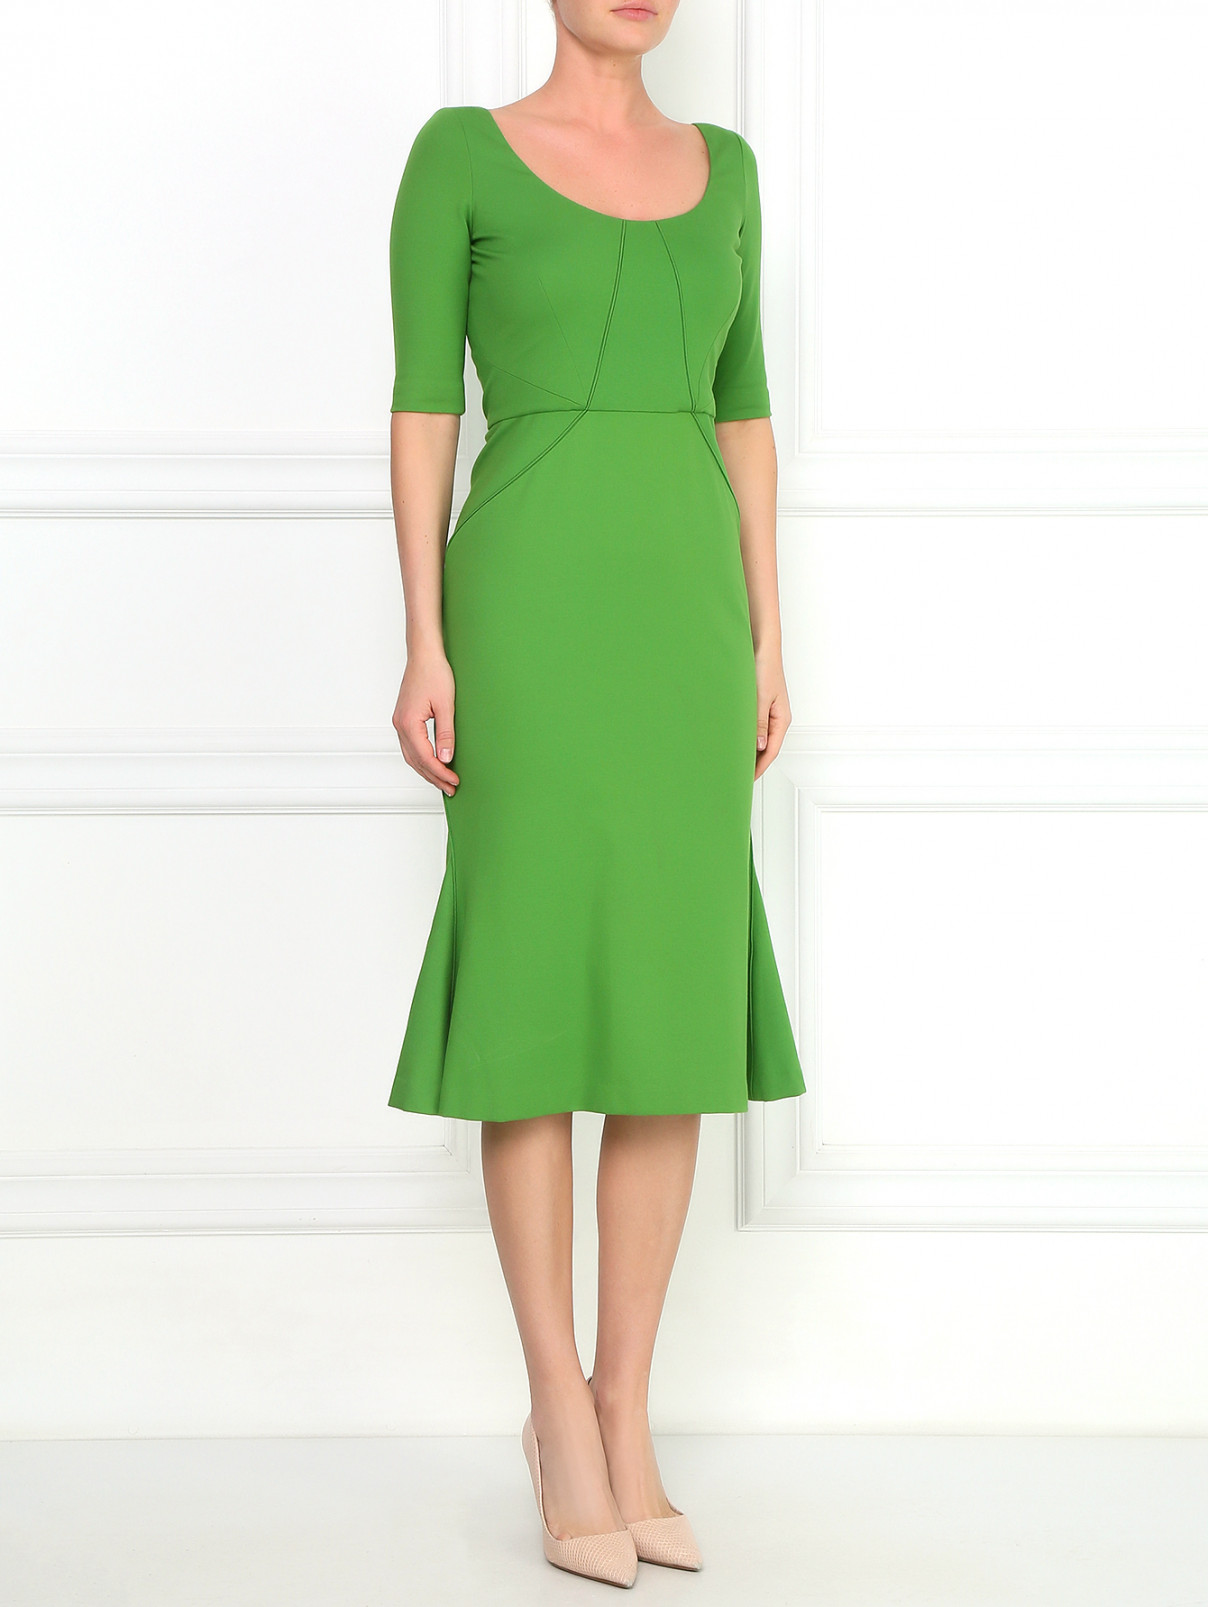 Платье-футляр из смешанного хлопка Zac Posen  –  Модель Общий вид  – Цвет:  Зеленый